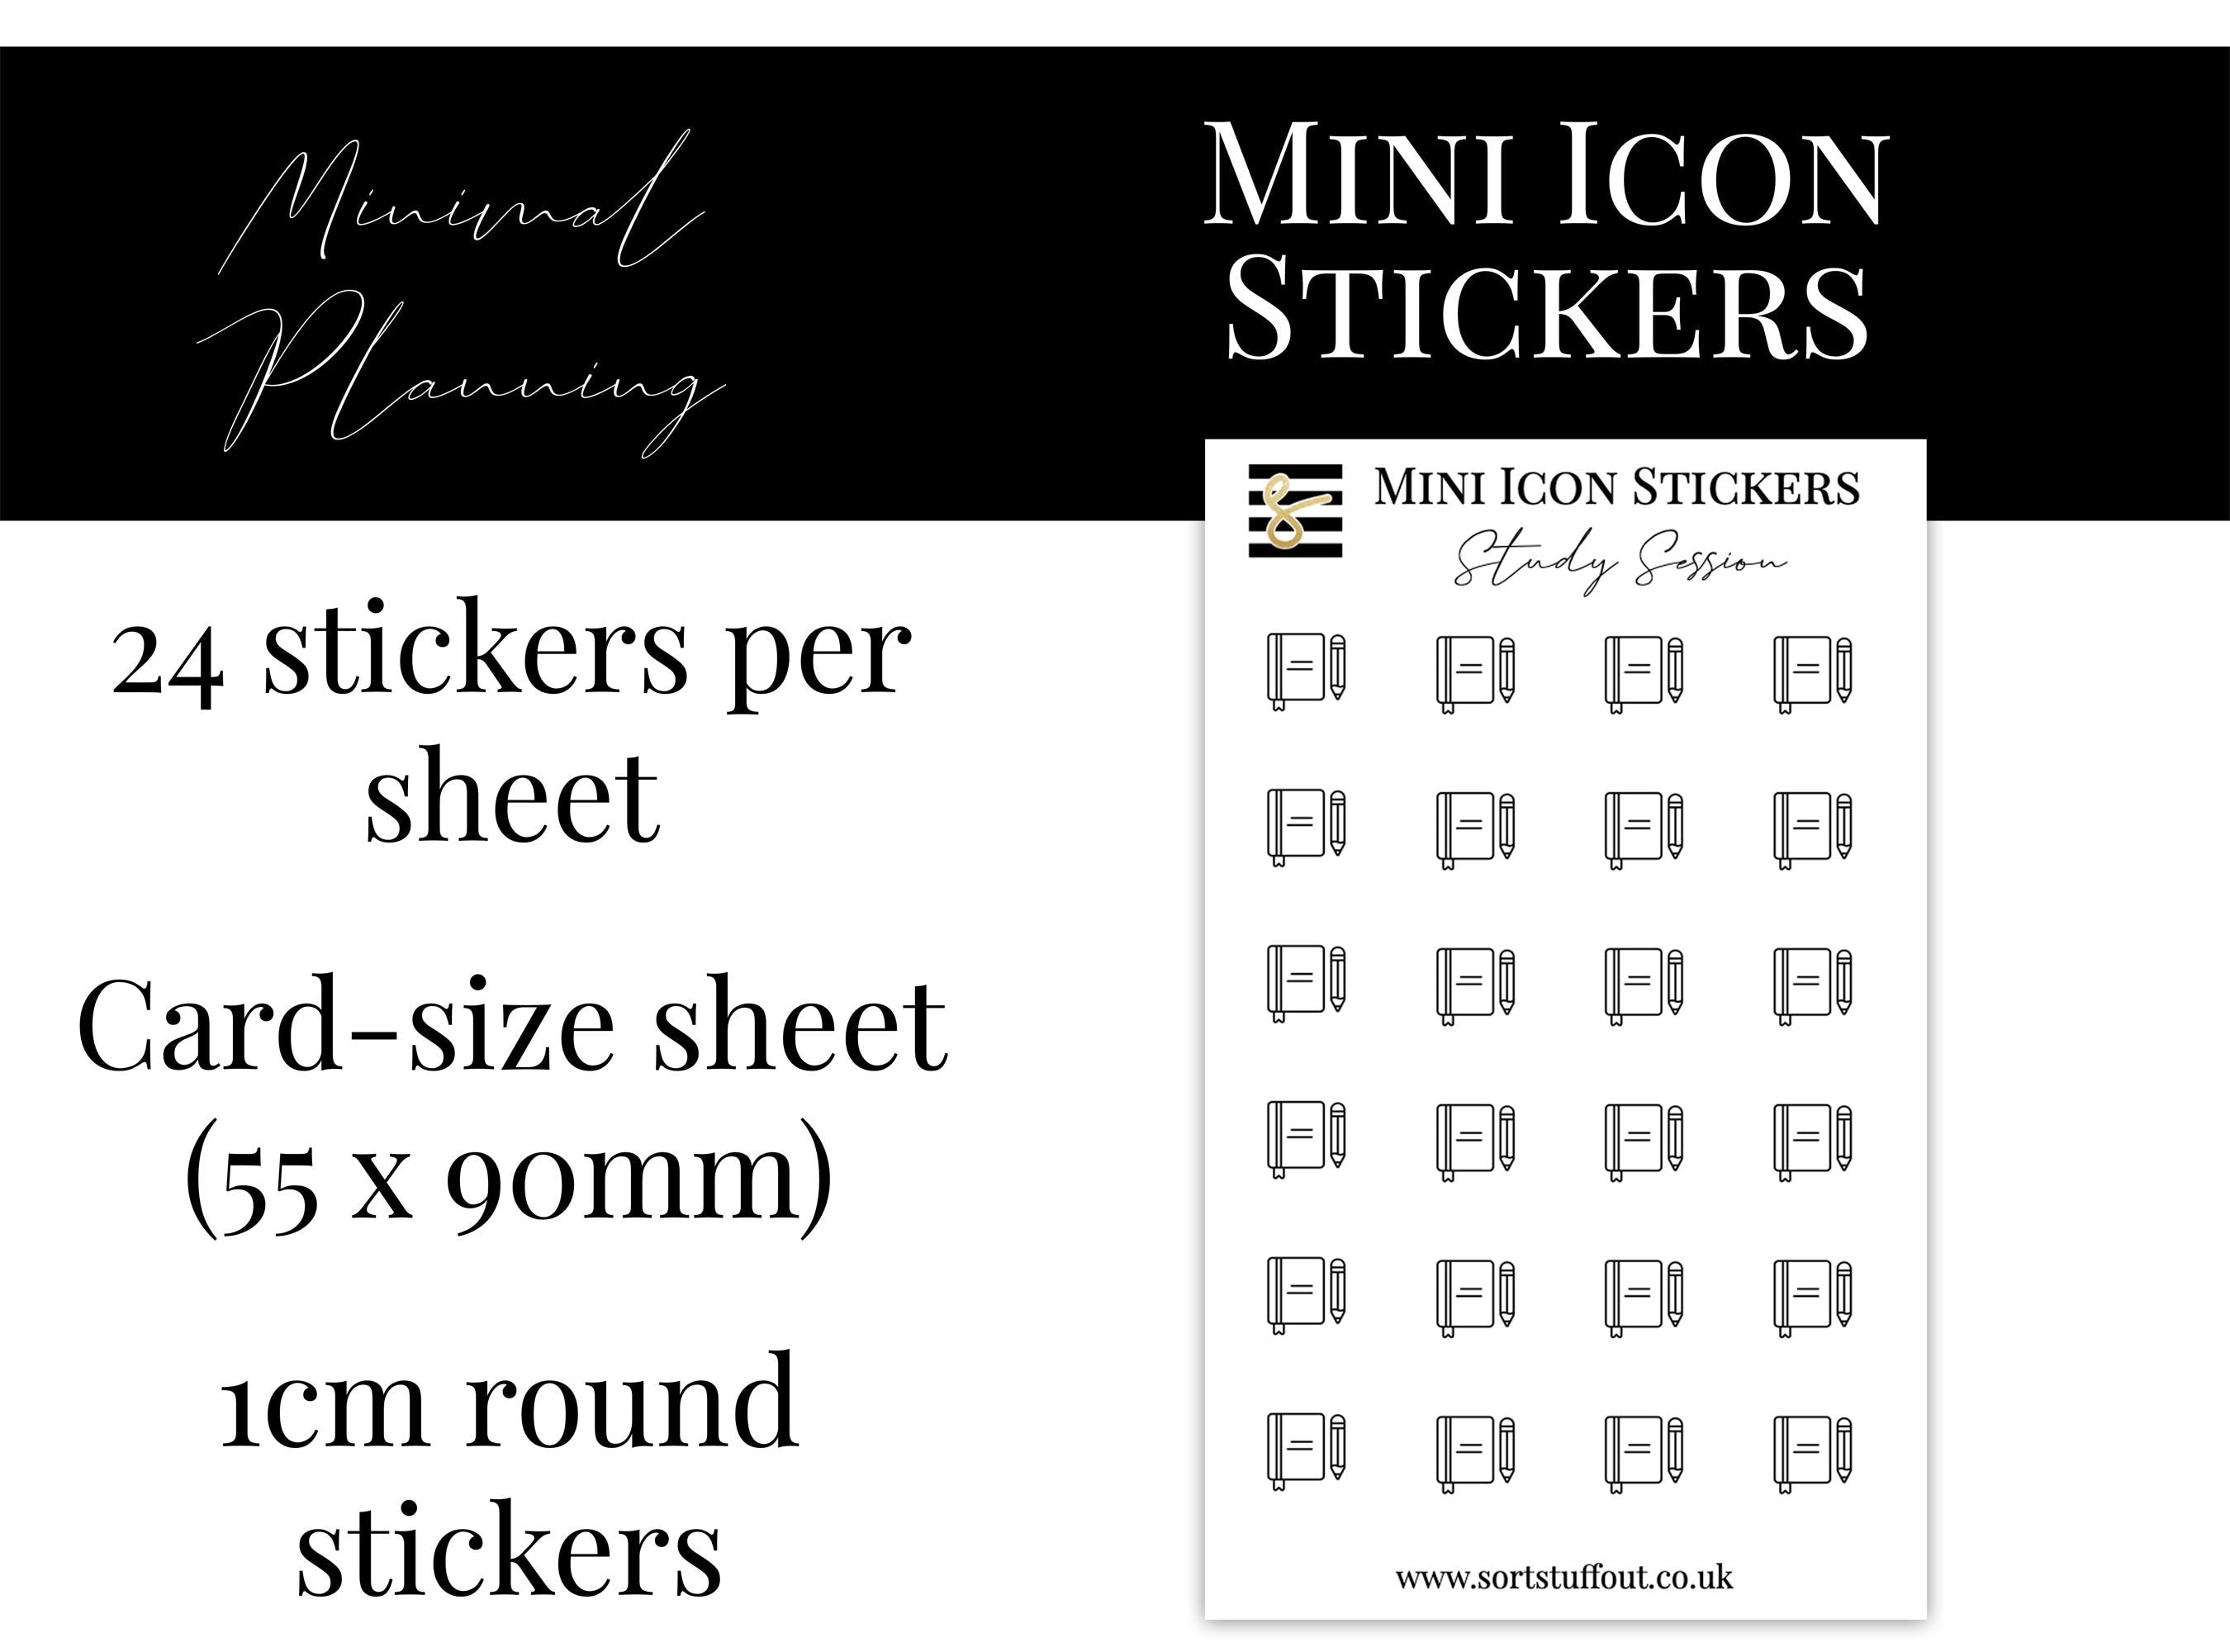 Mini Icon Stickers - Study Session